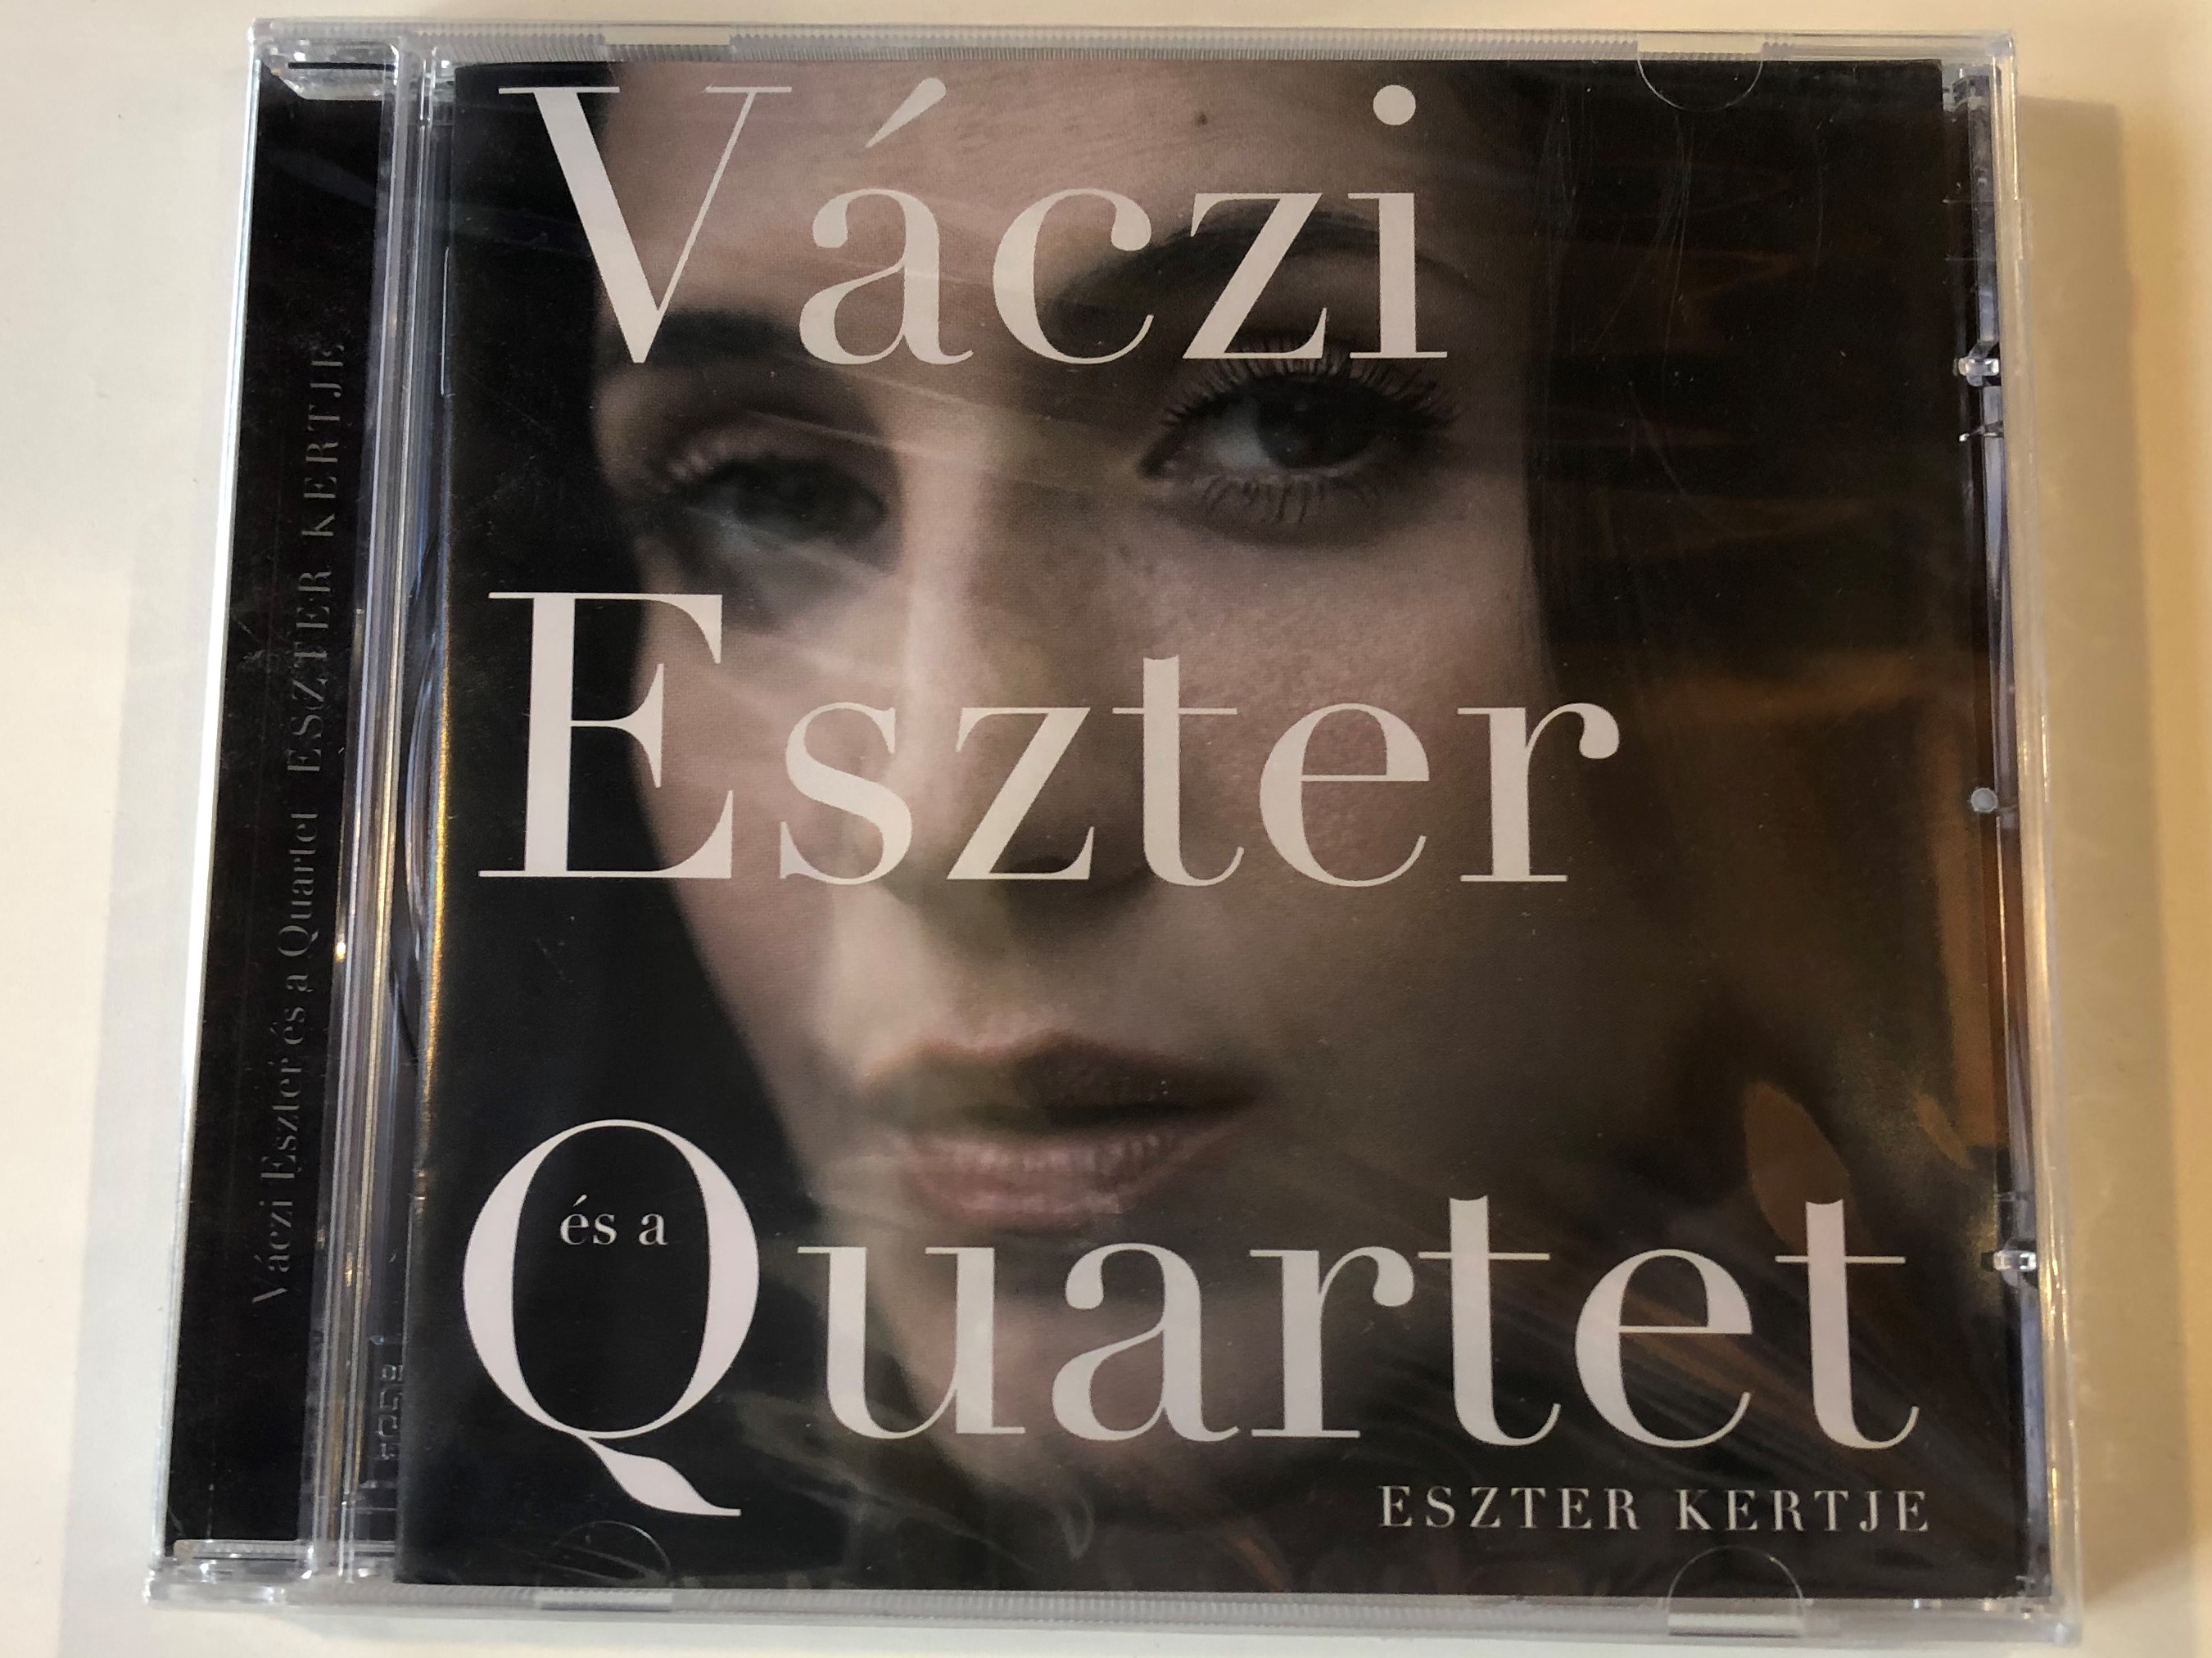 v-czi-eszter-quartet-eszter-kertje-tom-tom-records-audio-cd-2011-ttcd-159-1-.jpg